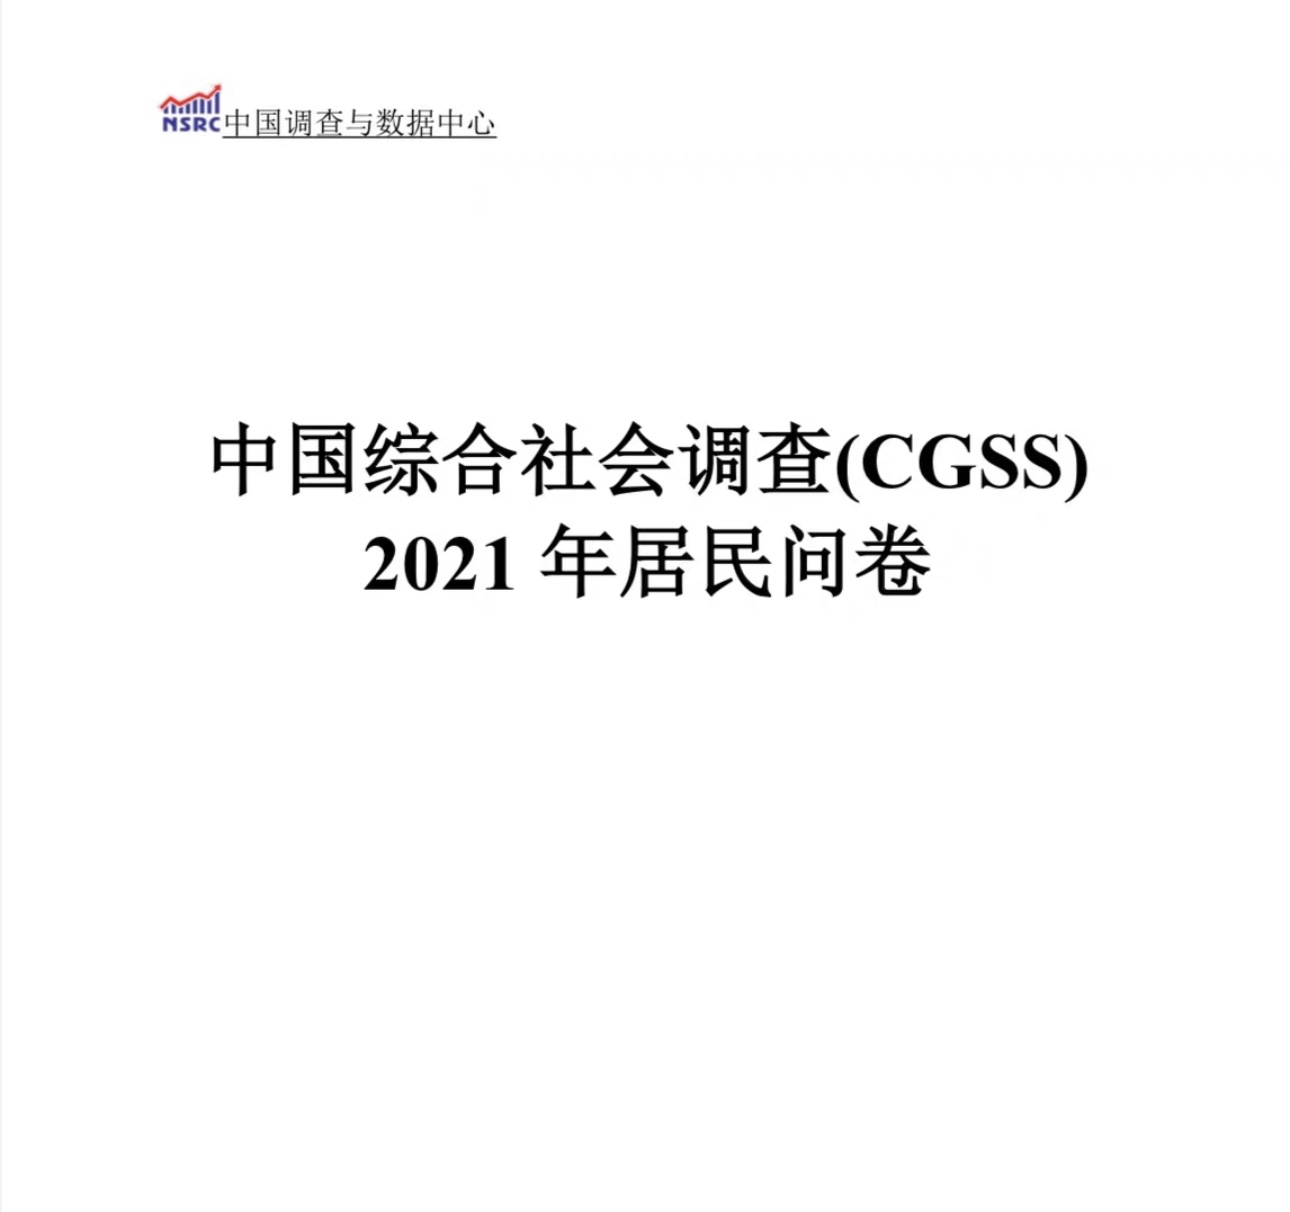 中国综合社会调查数据CGSS03-21(12年全部数据） 数据为stata格